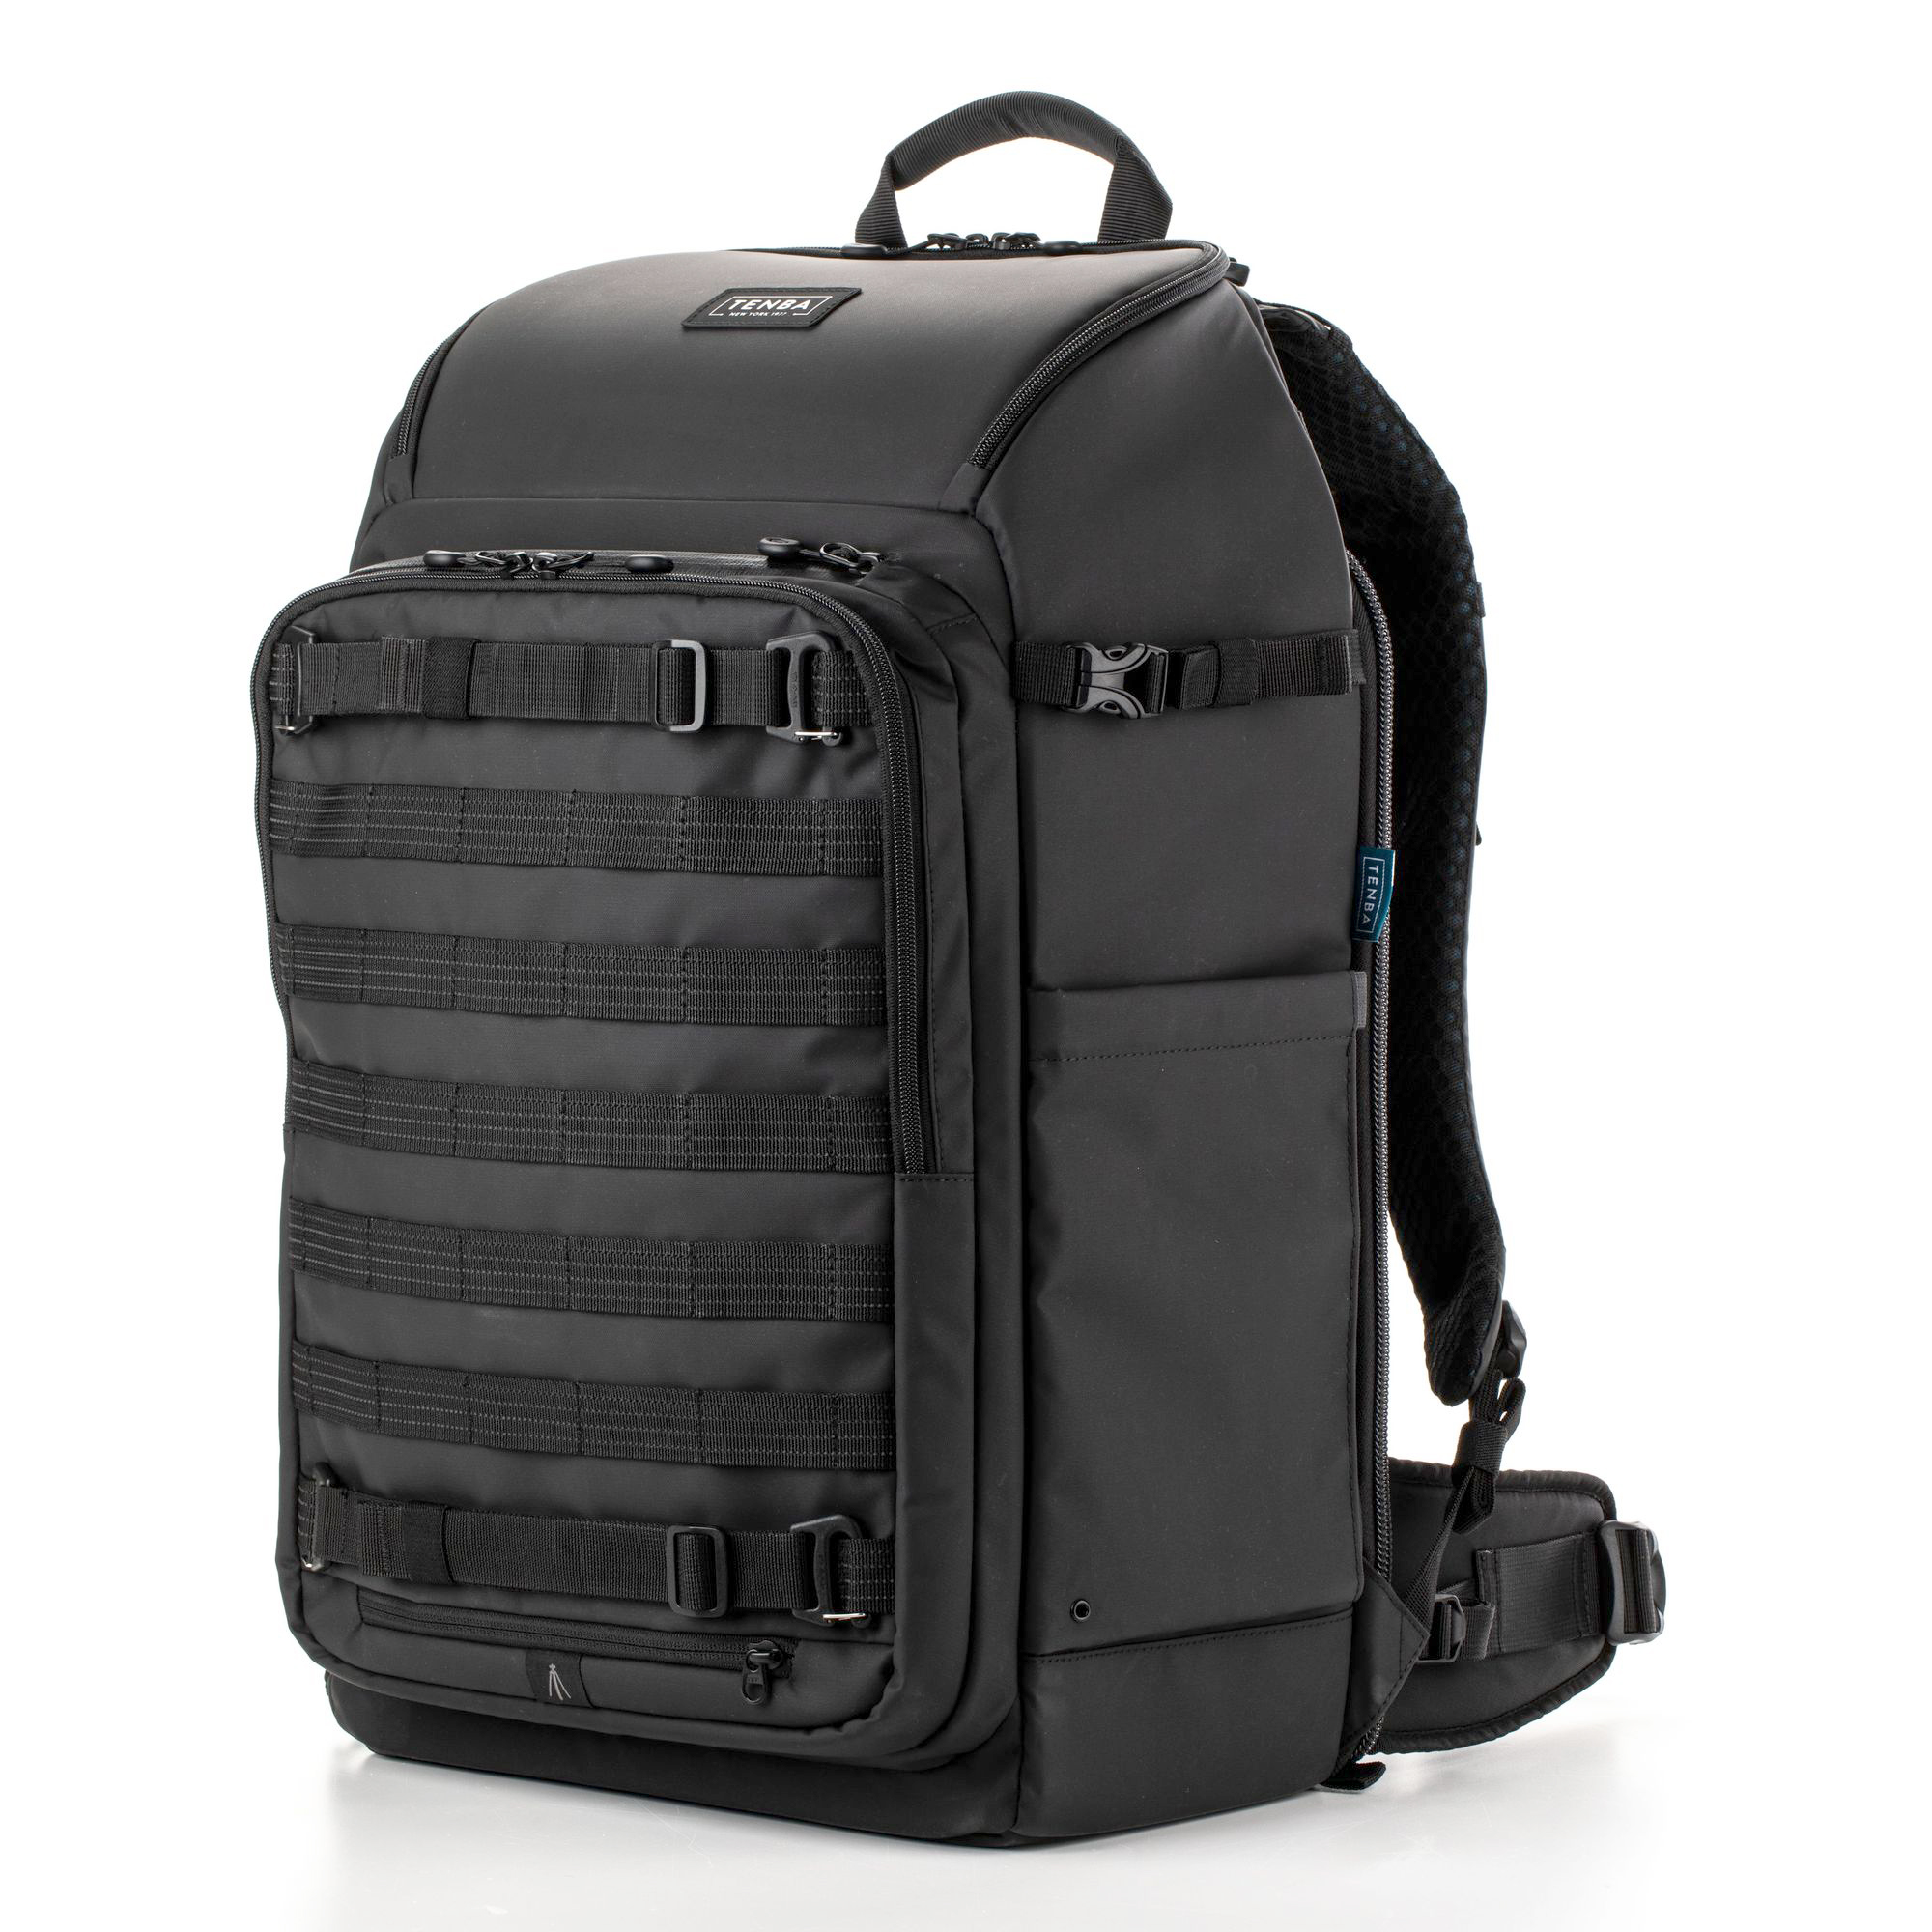 Рюкзак Tenba Axis v2 Tactical Backpack 32 black для фототехники